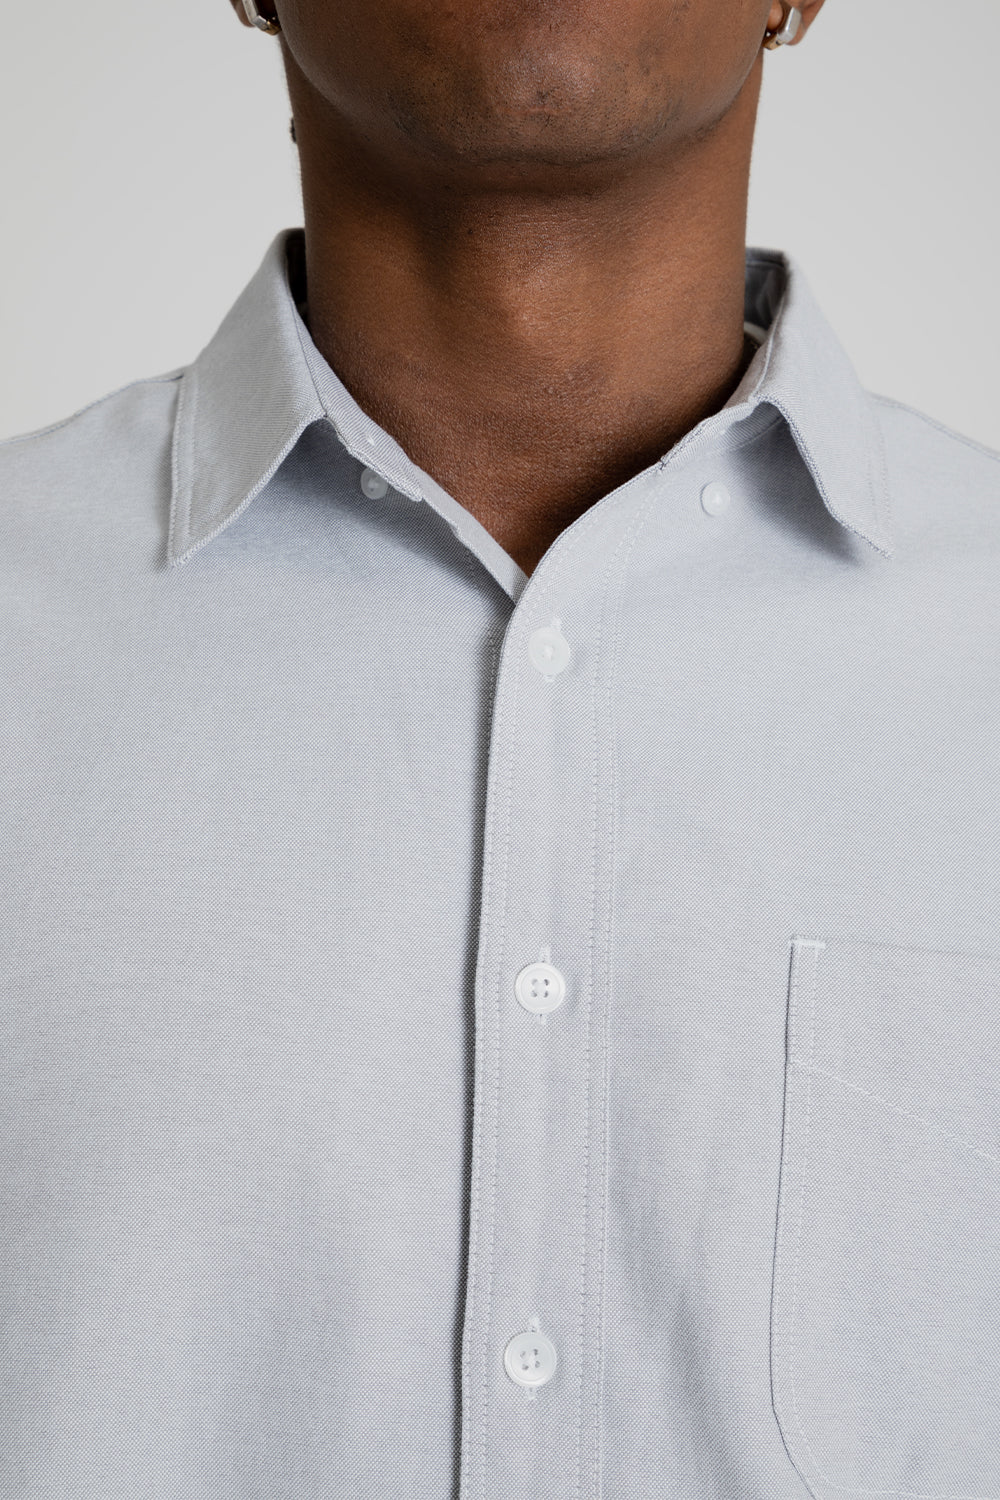 Frizmworks OG Oxford Oversized Shirt Gray Detail 01